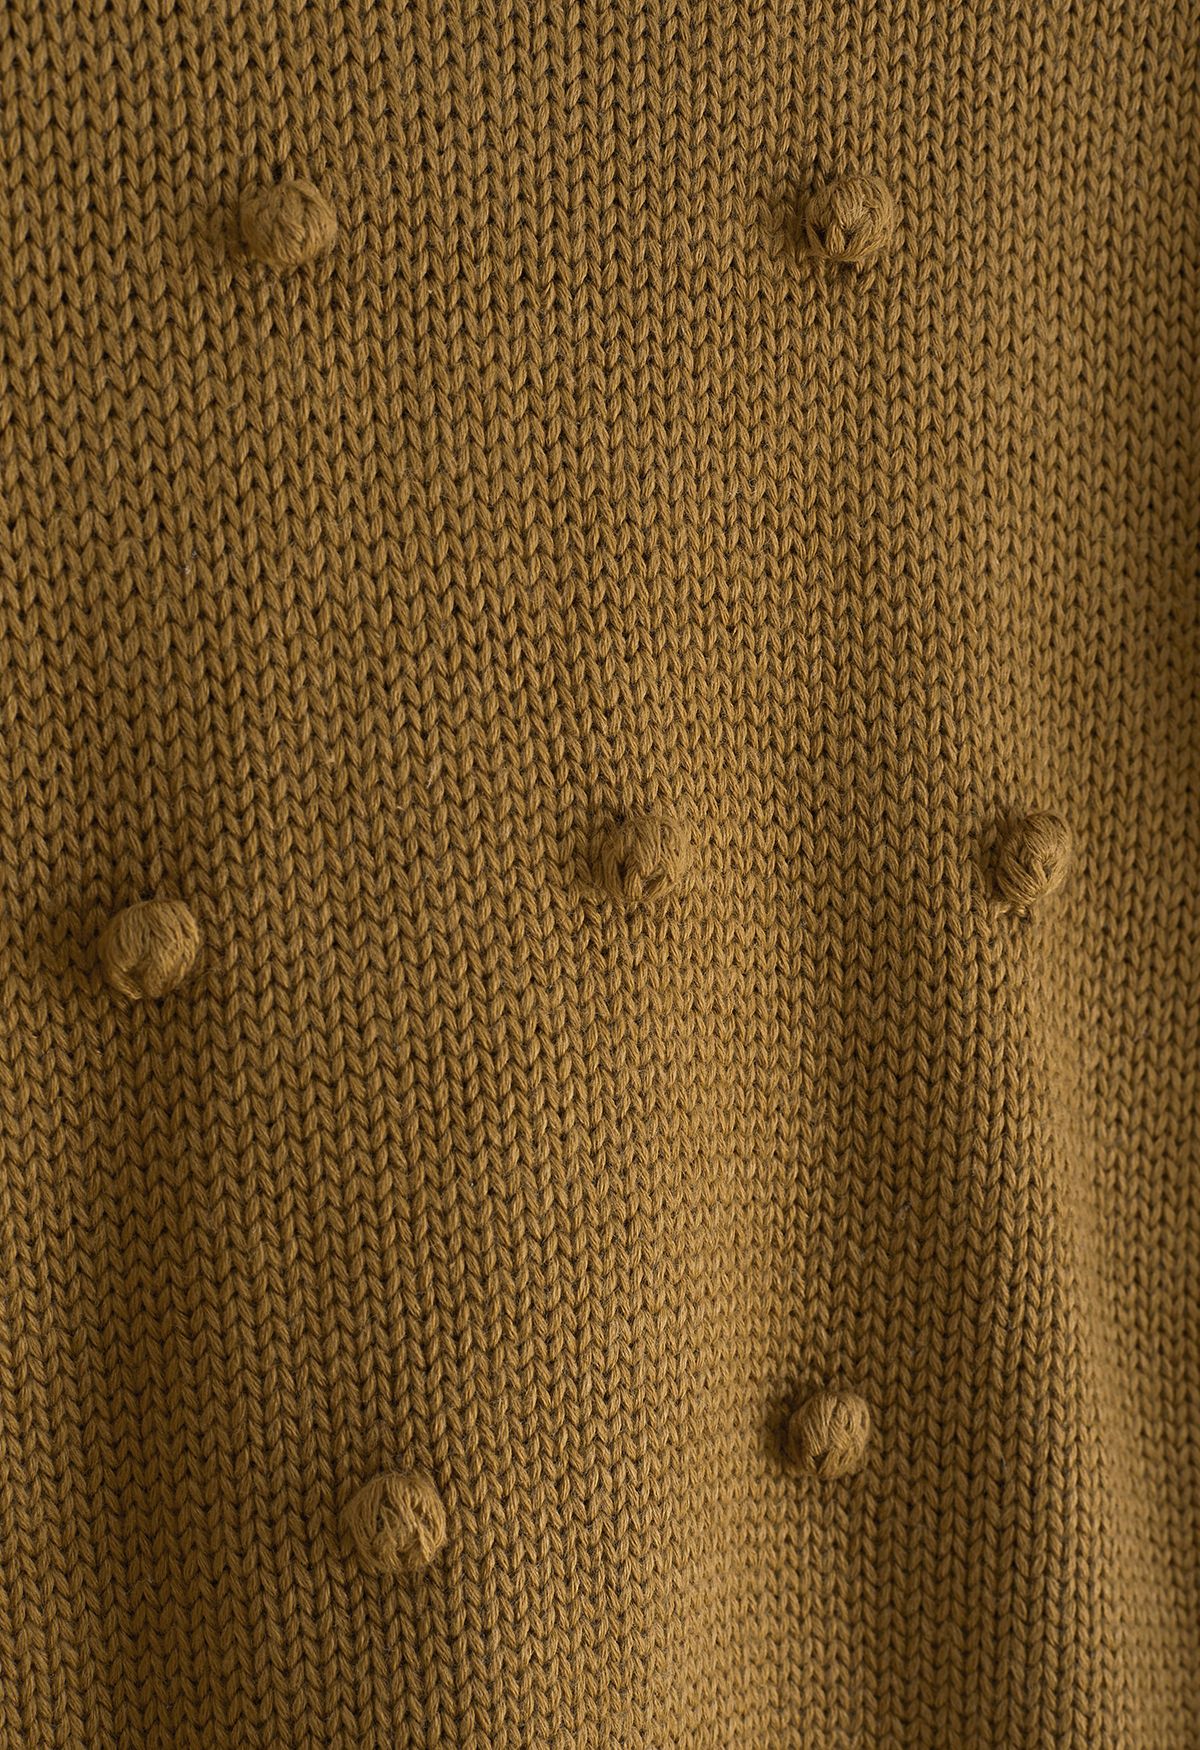 Pom-Pom Hand-Knit Sweater in Caramel For Kids